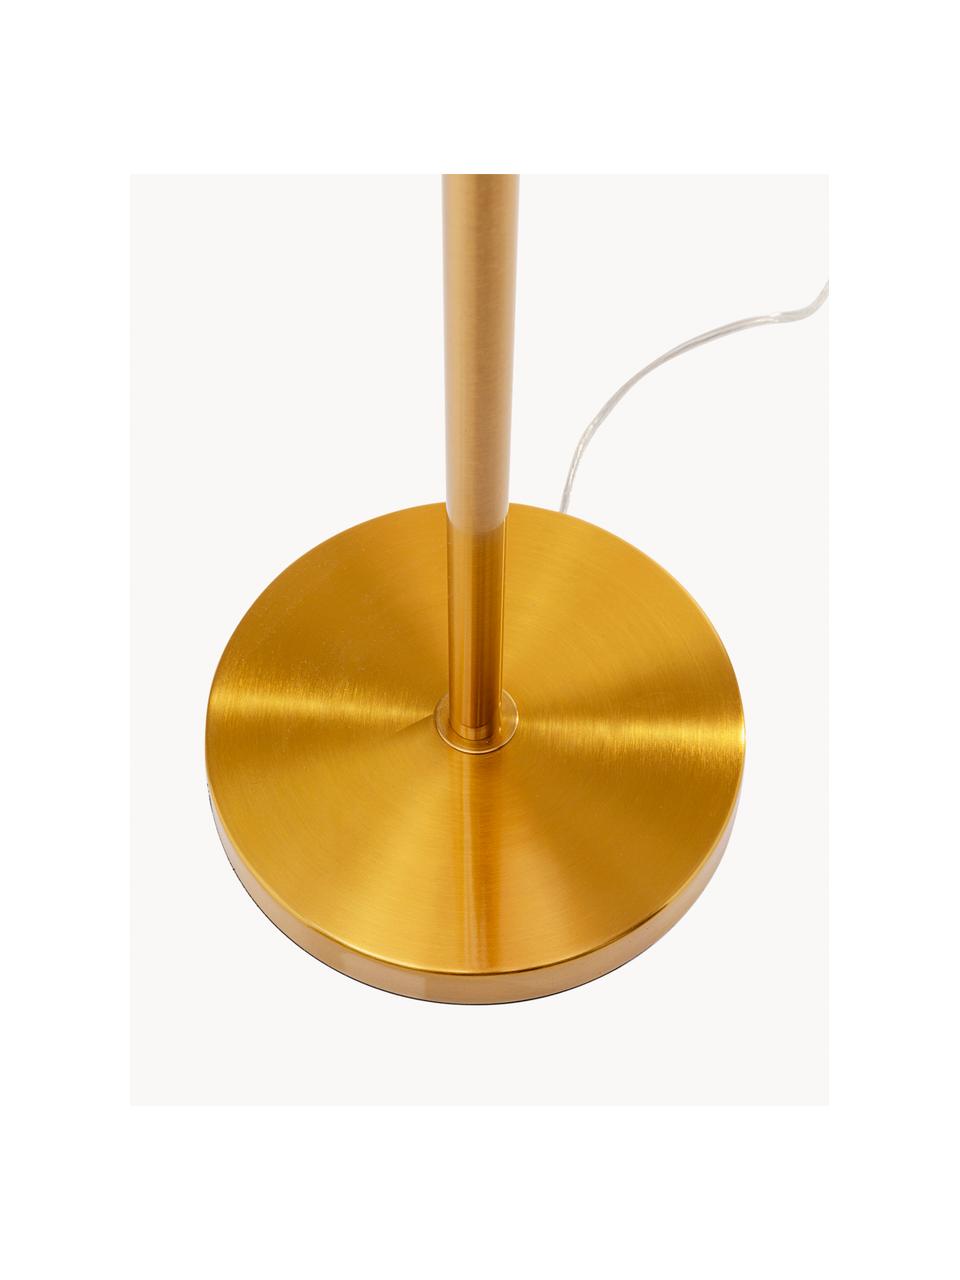 Lampa podłogowa Feather Palm, Odcienie złotego, blady różowy, W 165 cm